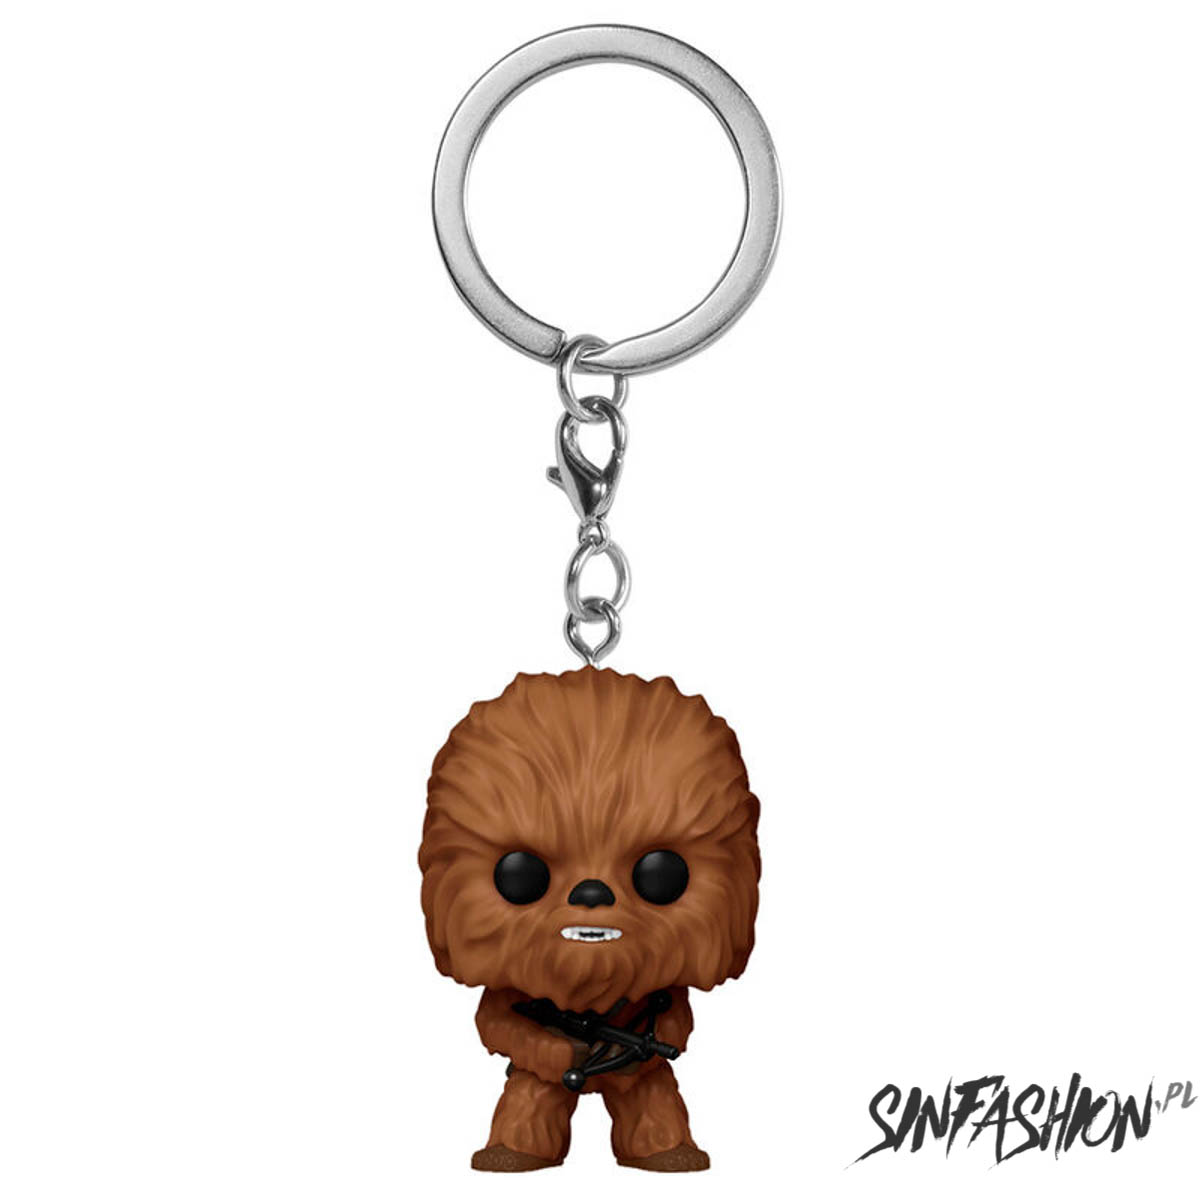 Pocket POP keychain Star Wars Chewbacca